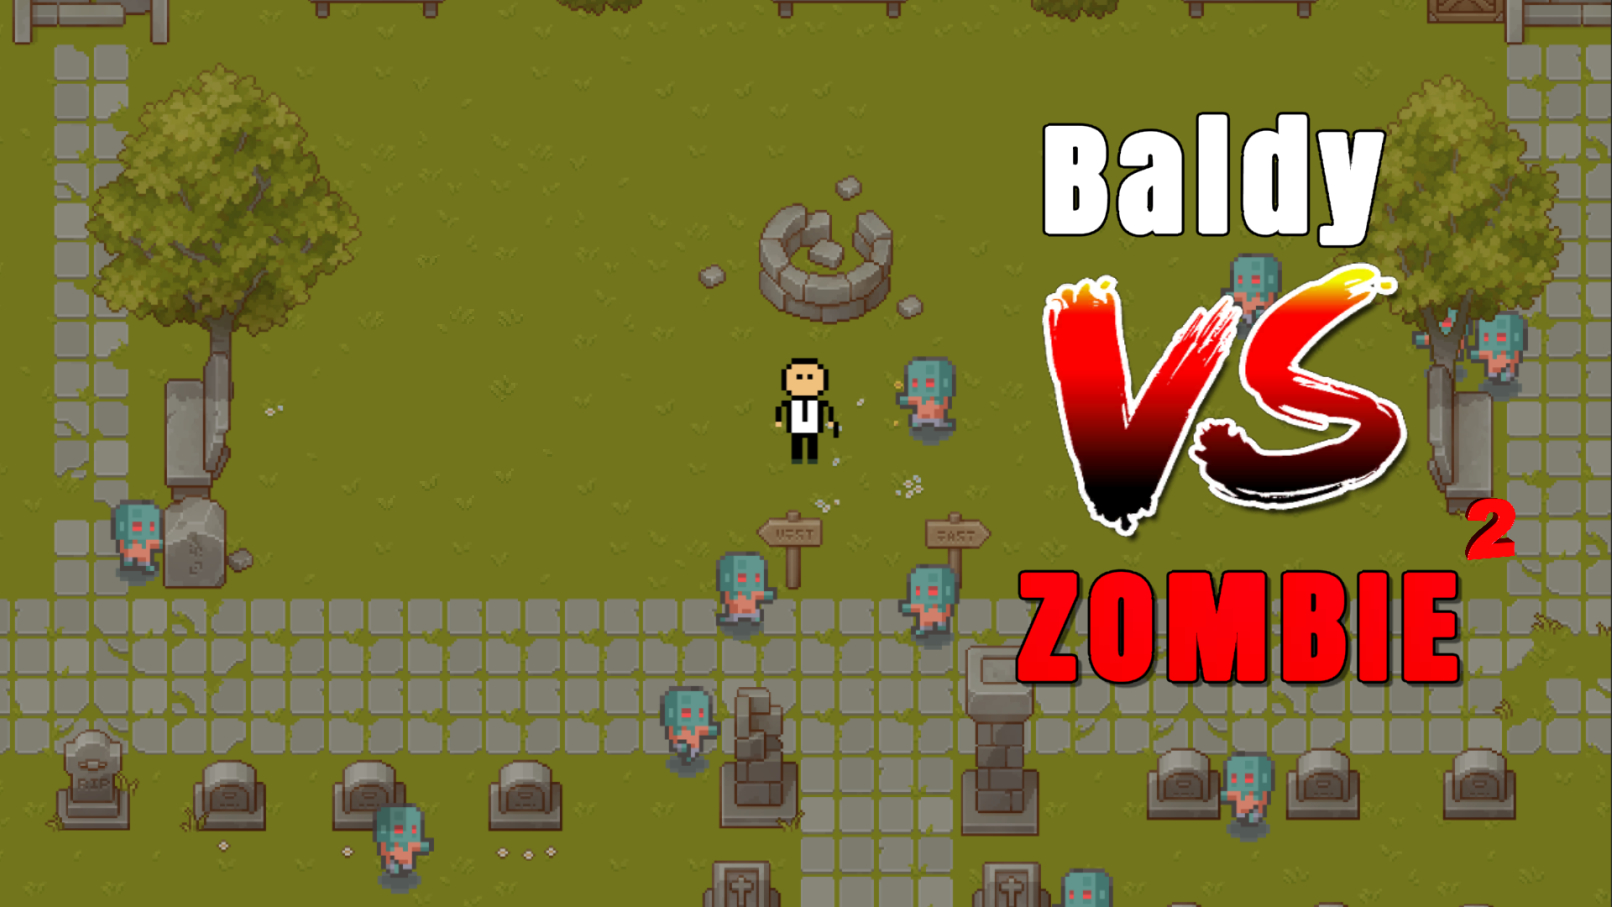 Baldy vs Zombie 2